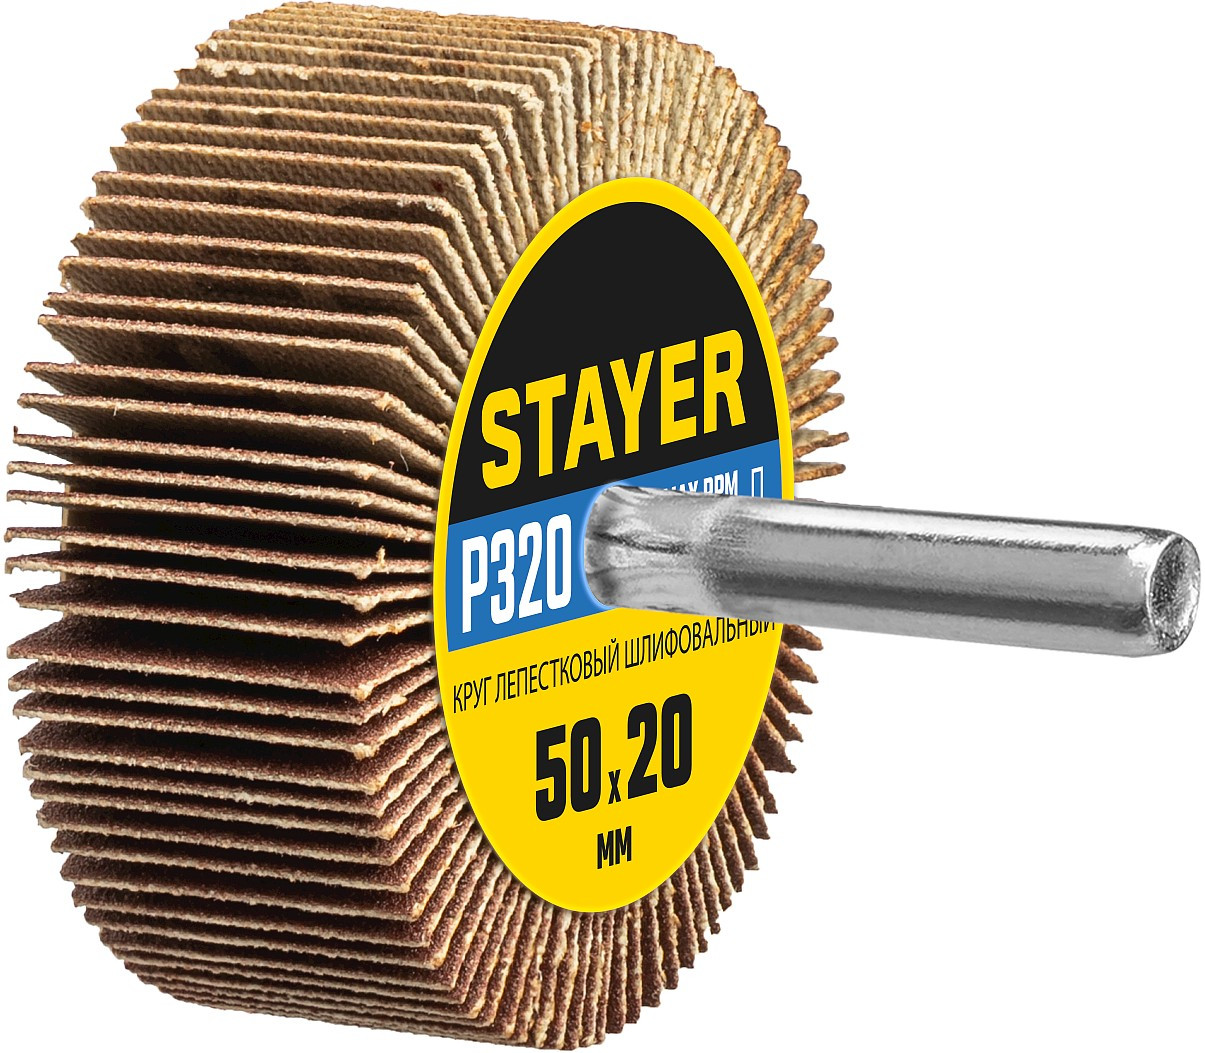 STAYER P320, 50х20 мм, круг шлифовальный лепестковый на шпильке 36607-320, фото 1